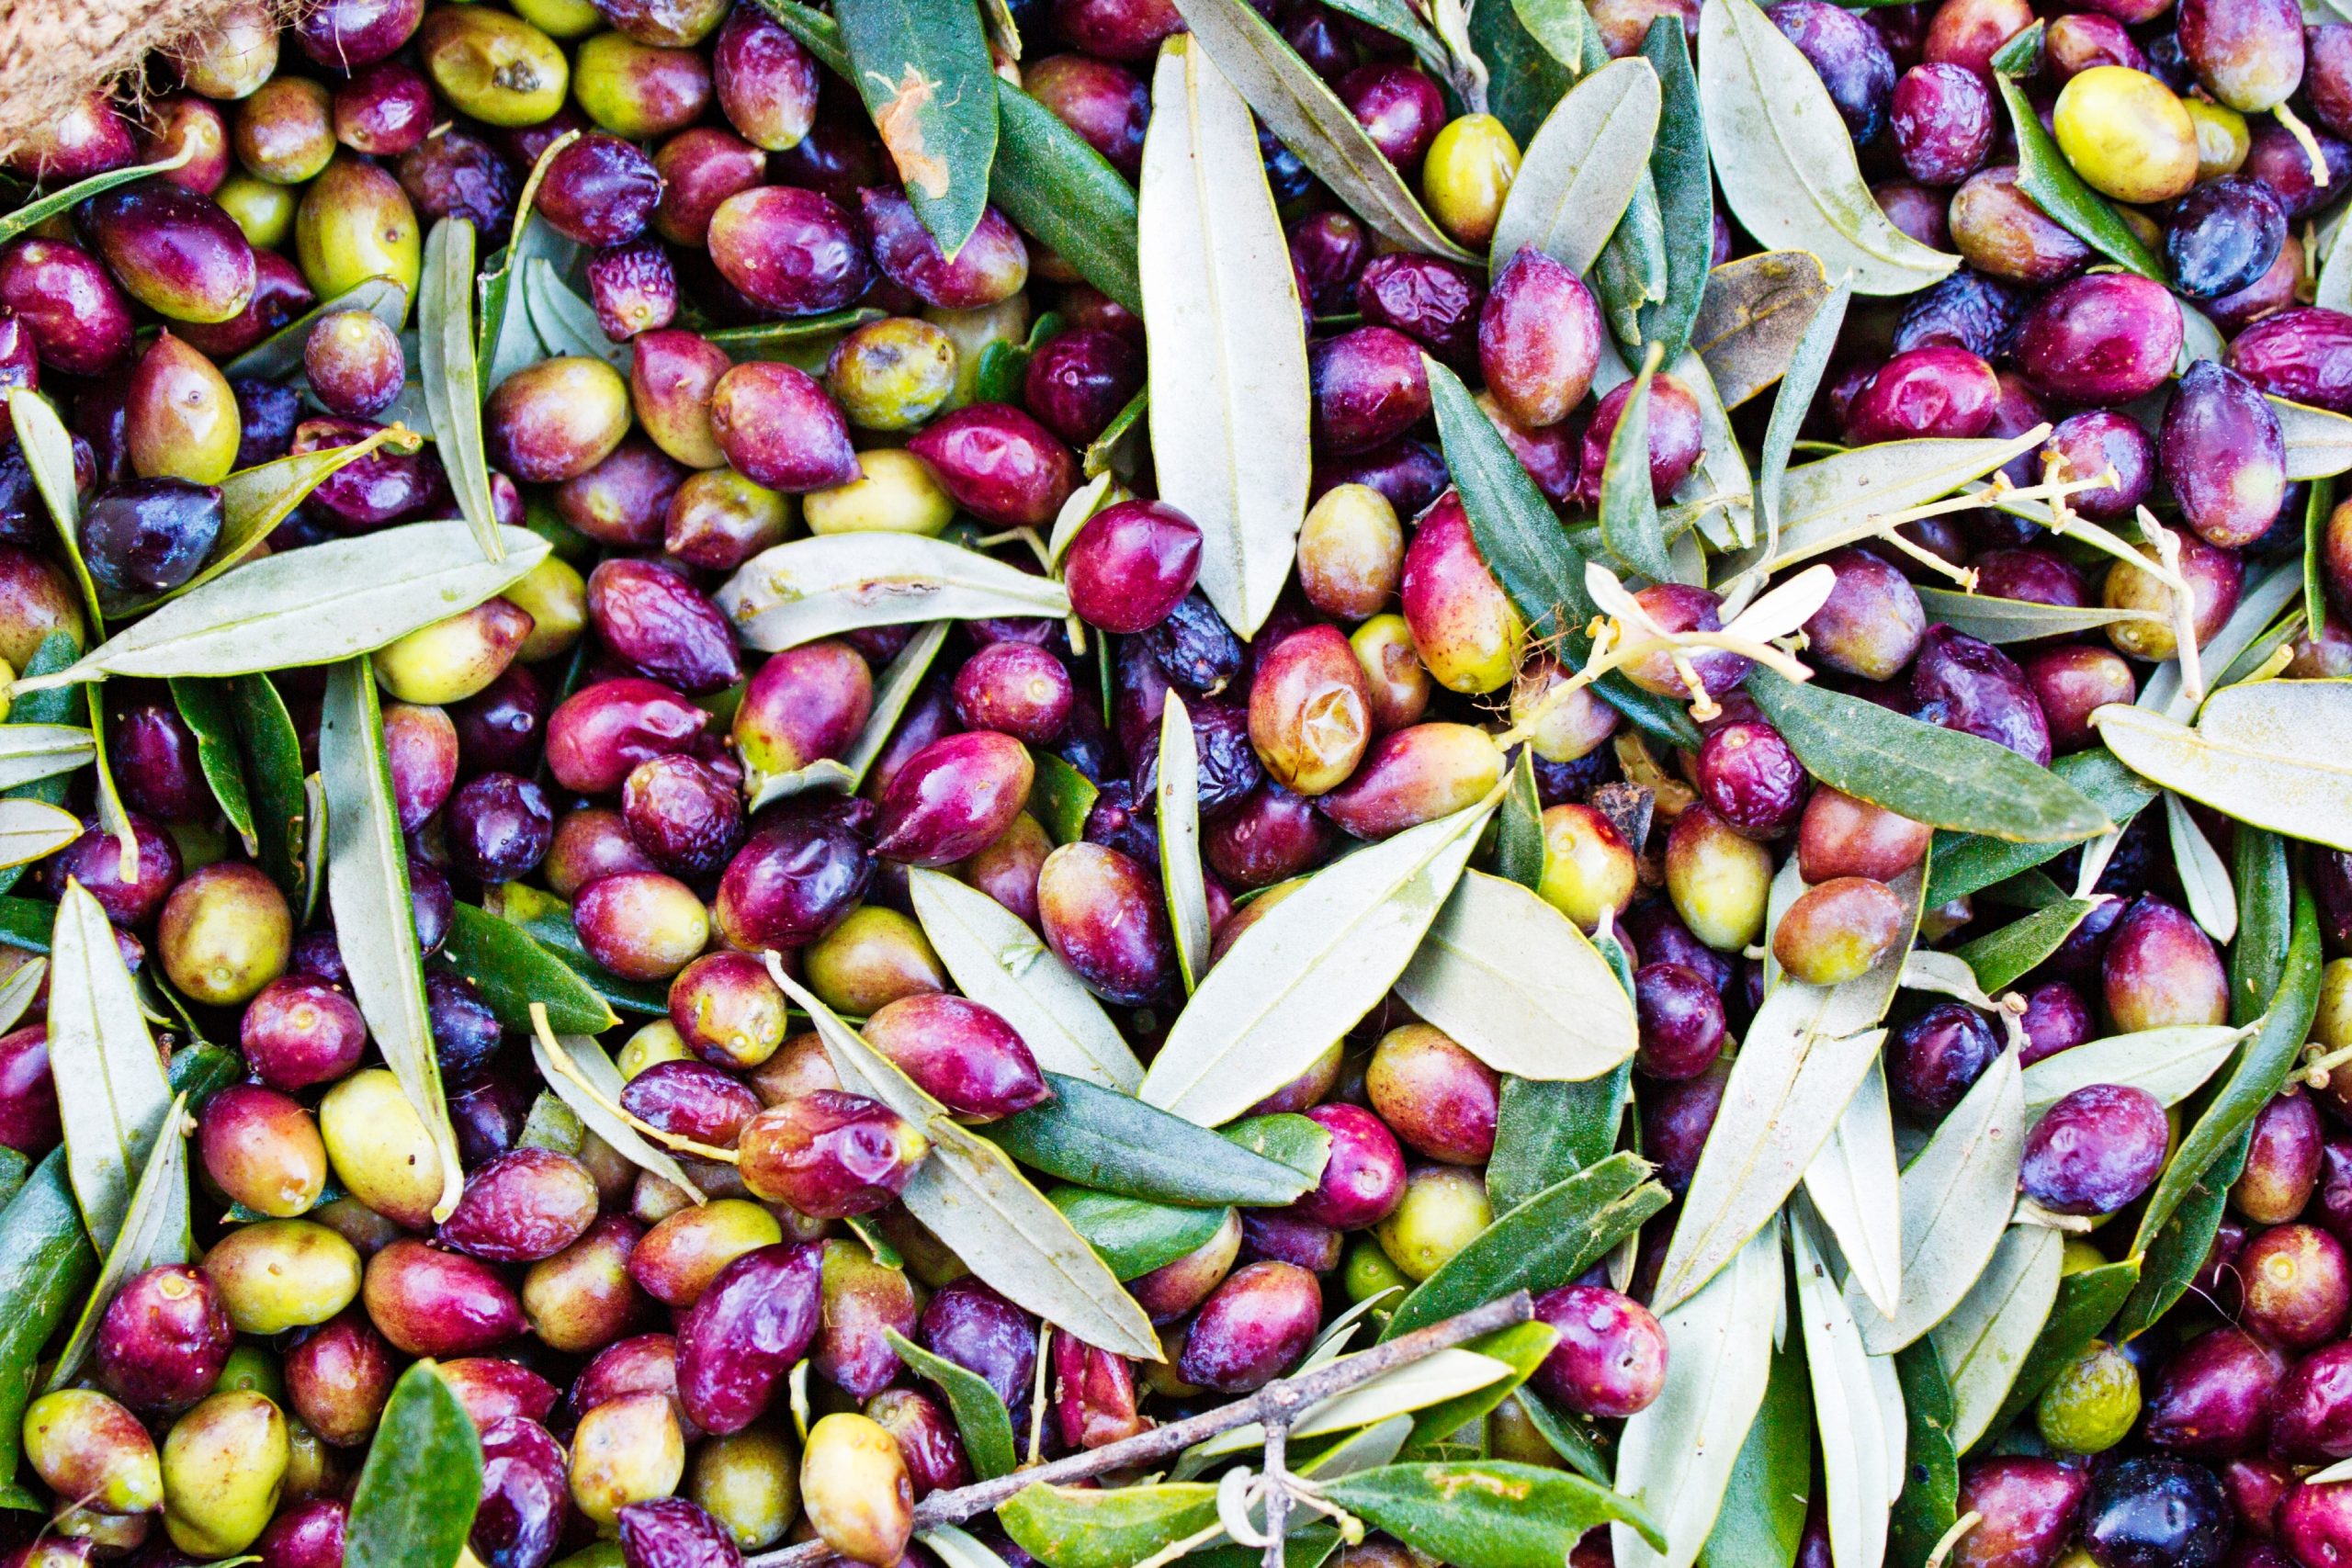 Koroneiki Oliven während Ernte in Griechenland